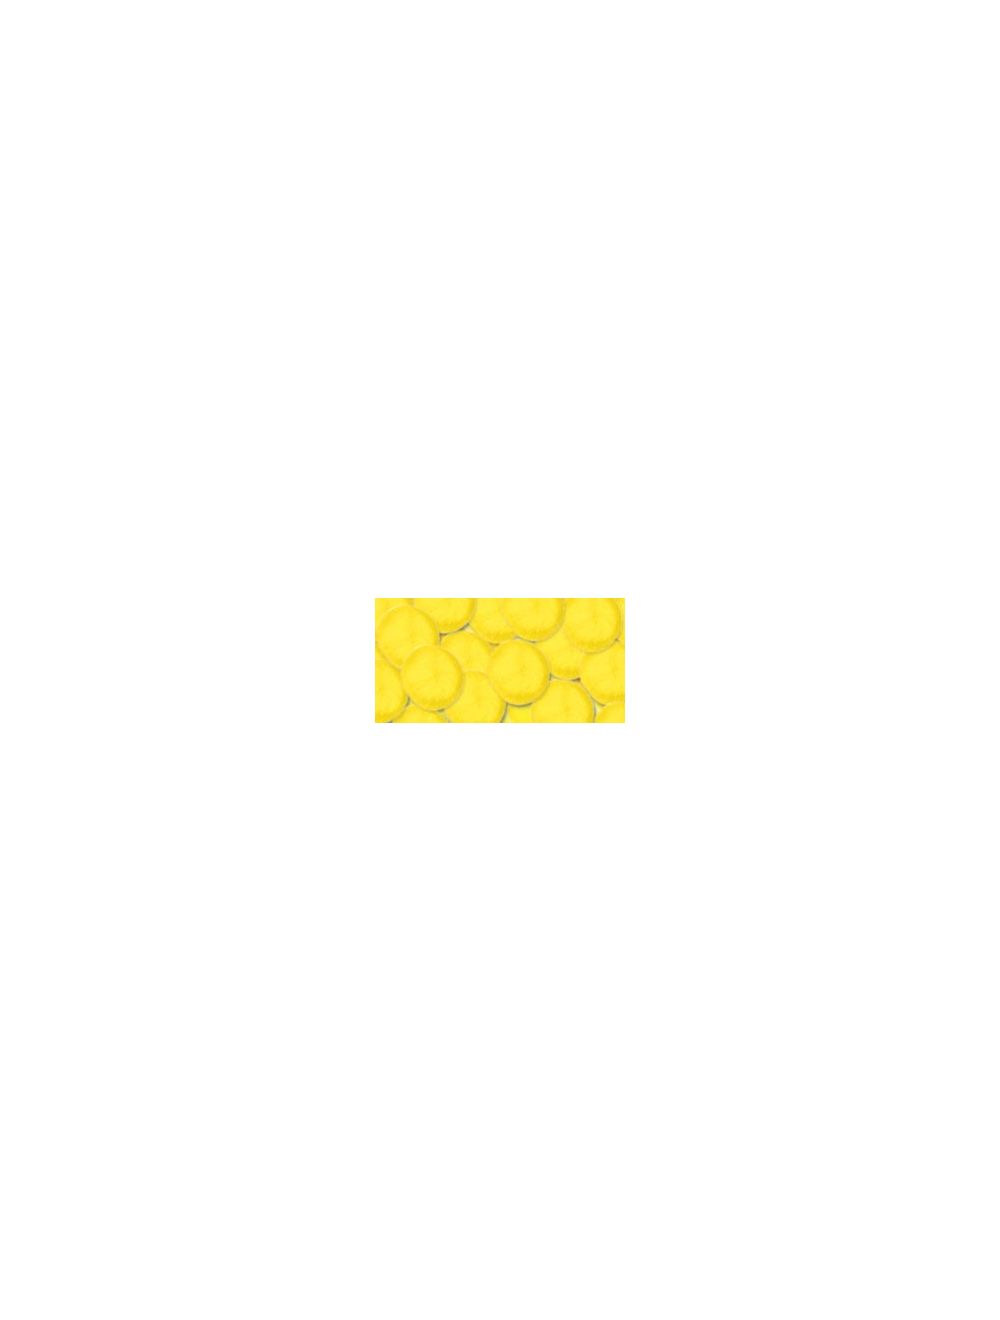 Easter Pom Poms | Yellow Pom-Poms - 1.5 - 15 Pieces/Pkg. (nm40000781)